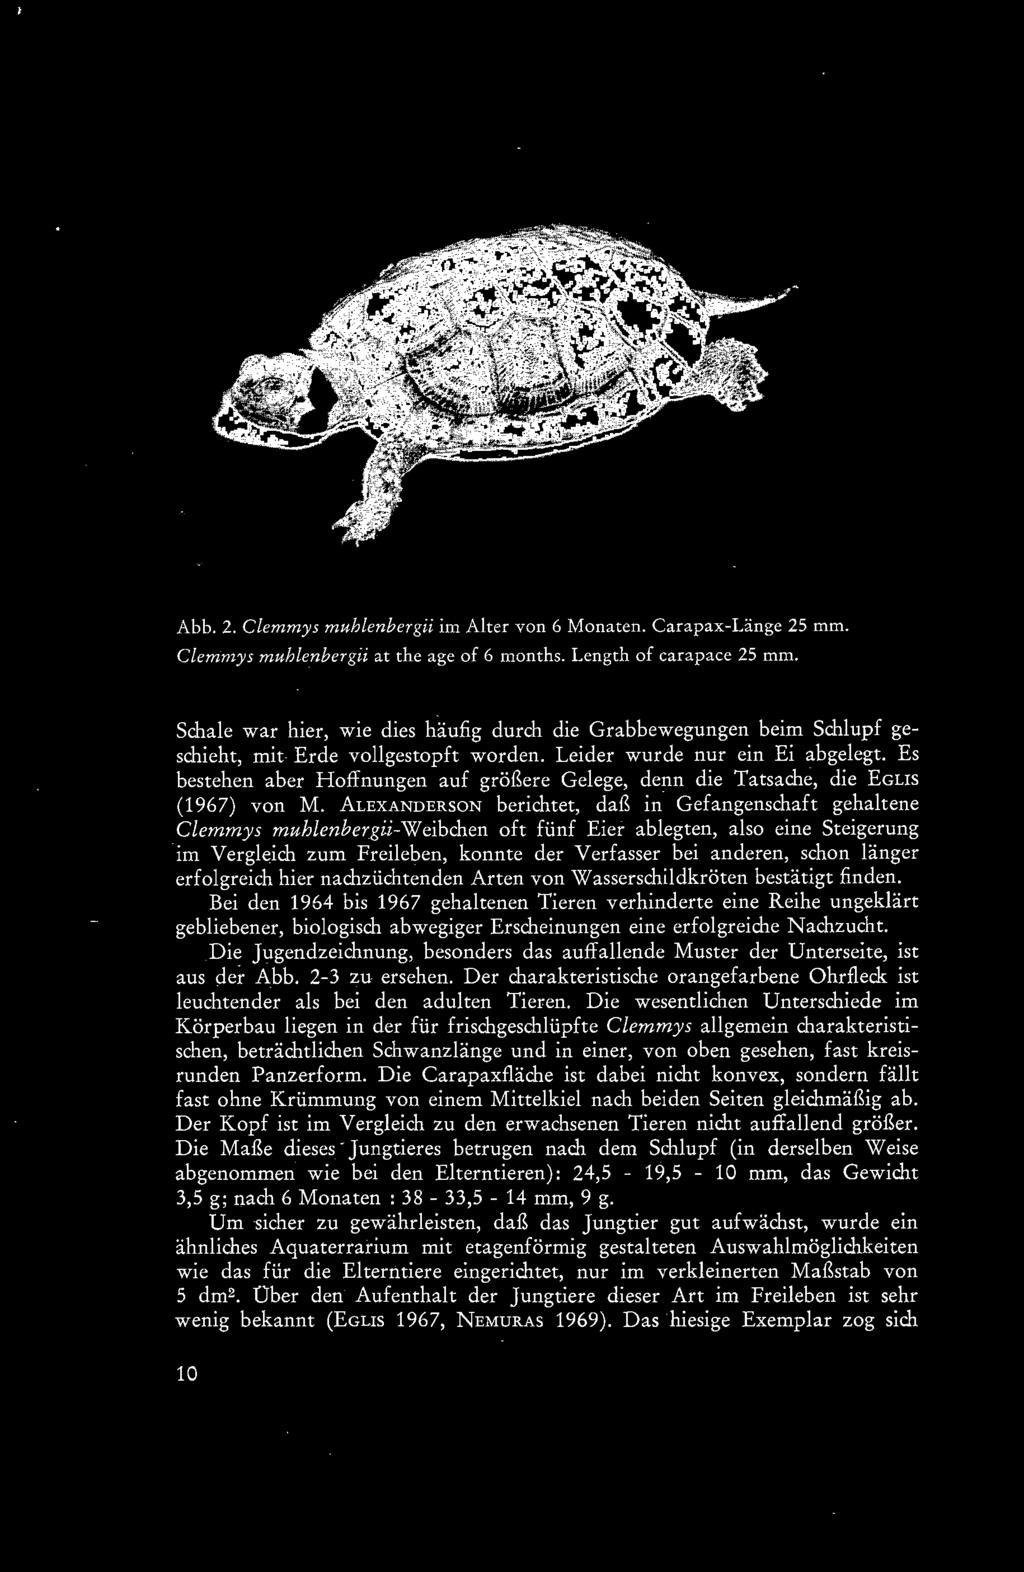 länger erfolgreich hier nachzüchtenden Arten von Wasserschildkröten bestätigt finden.